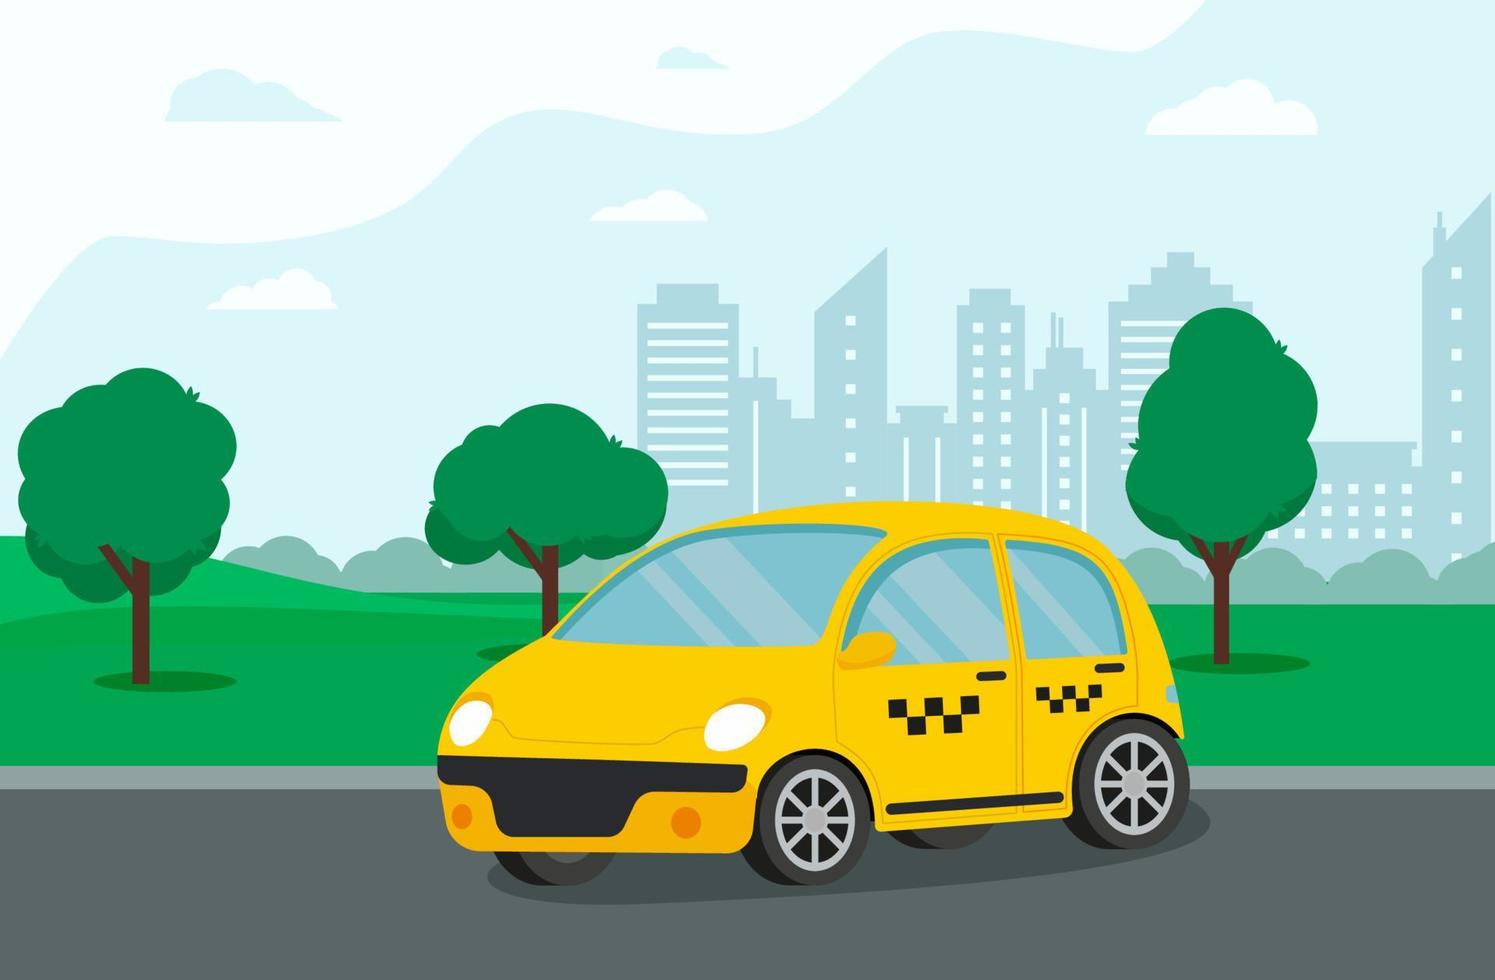 taxi amarillo manos con smartphone y aplicación de taxi en la ciudad. concepto de servicio de taxi. ilustración vectorial en estilo plano vector